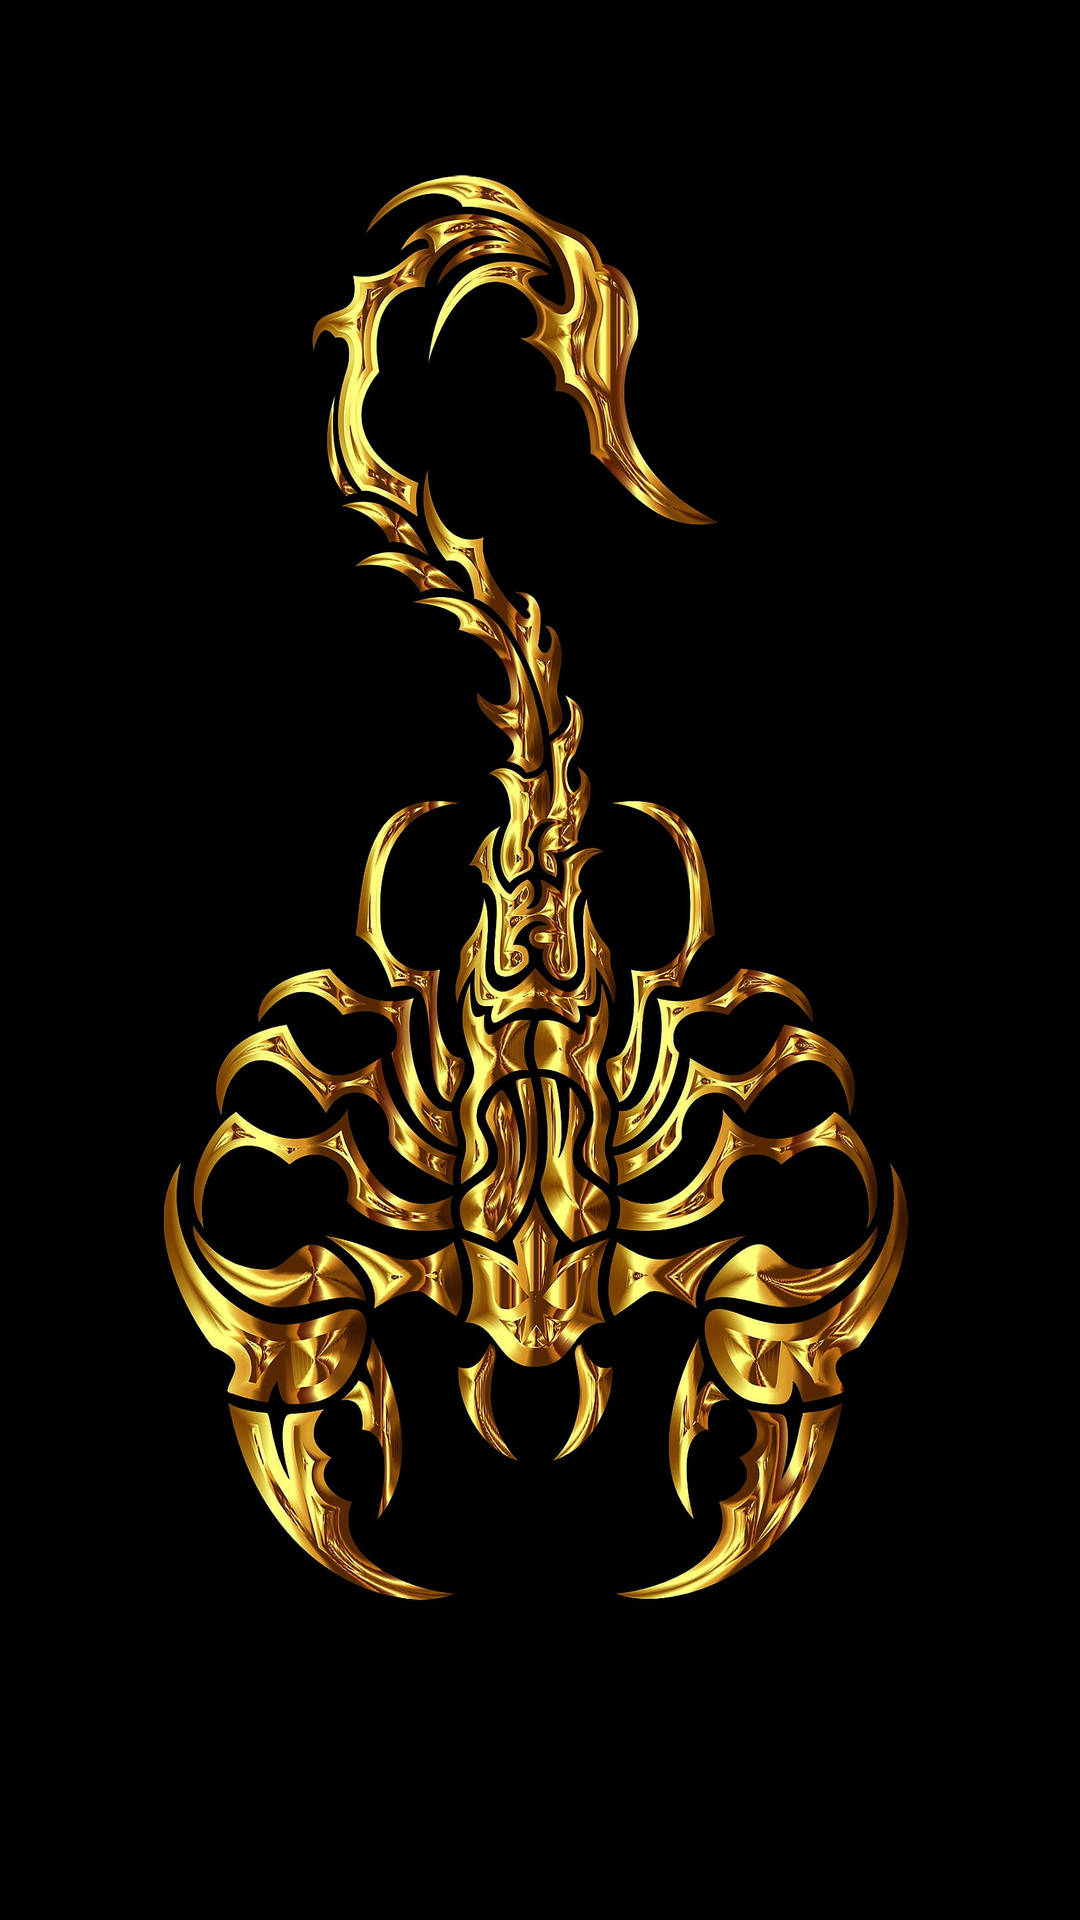 Skorpionglänzendes Gold-ästhetik Auf Schwarz Wallpaper